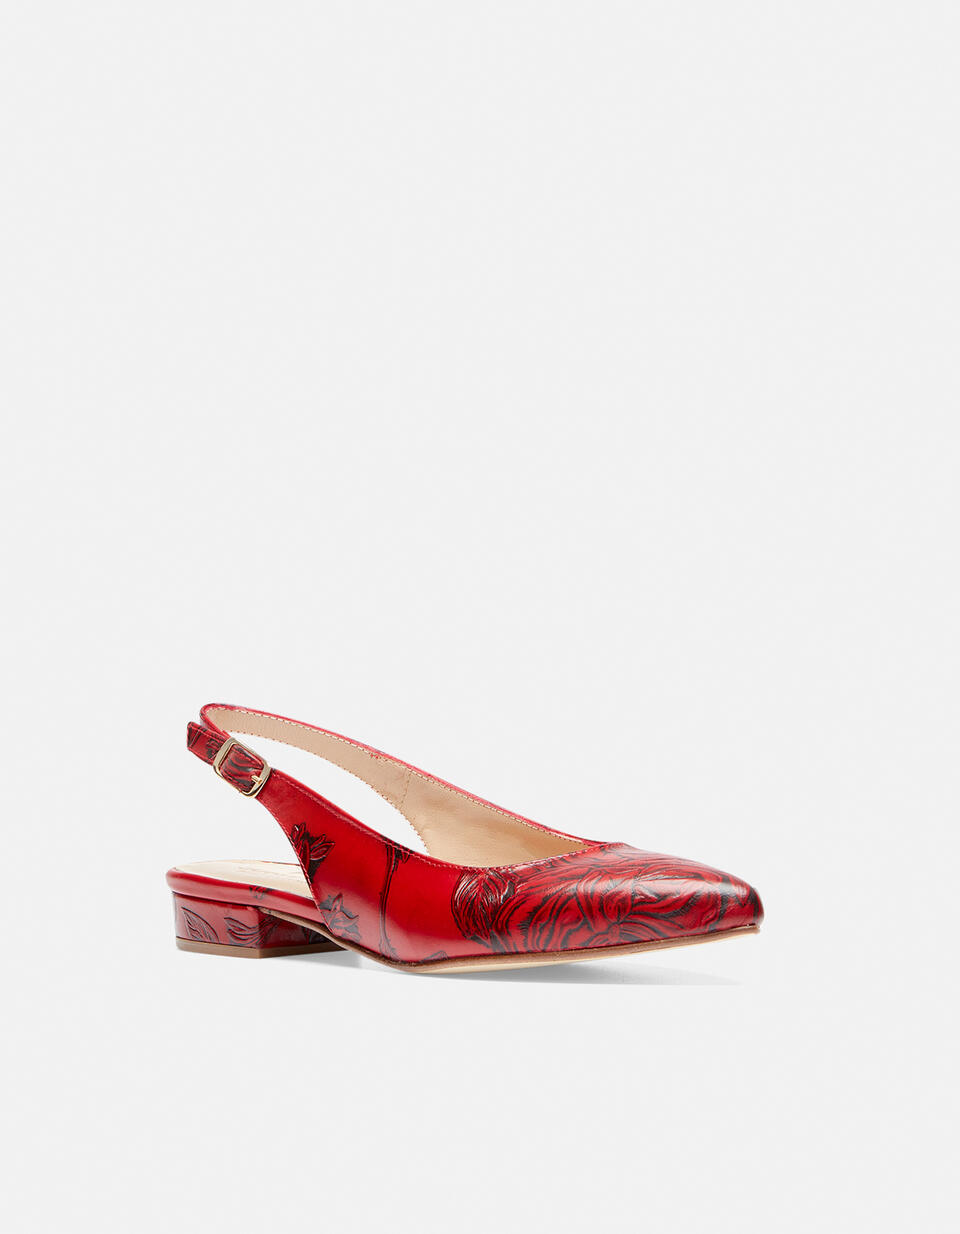 Slingback Mimi ROSSO  - Women Shoes - Shoes - Cuoieria Fiorentina